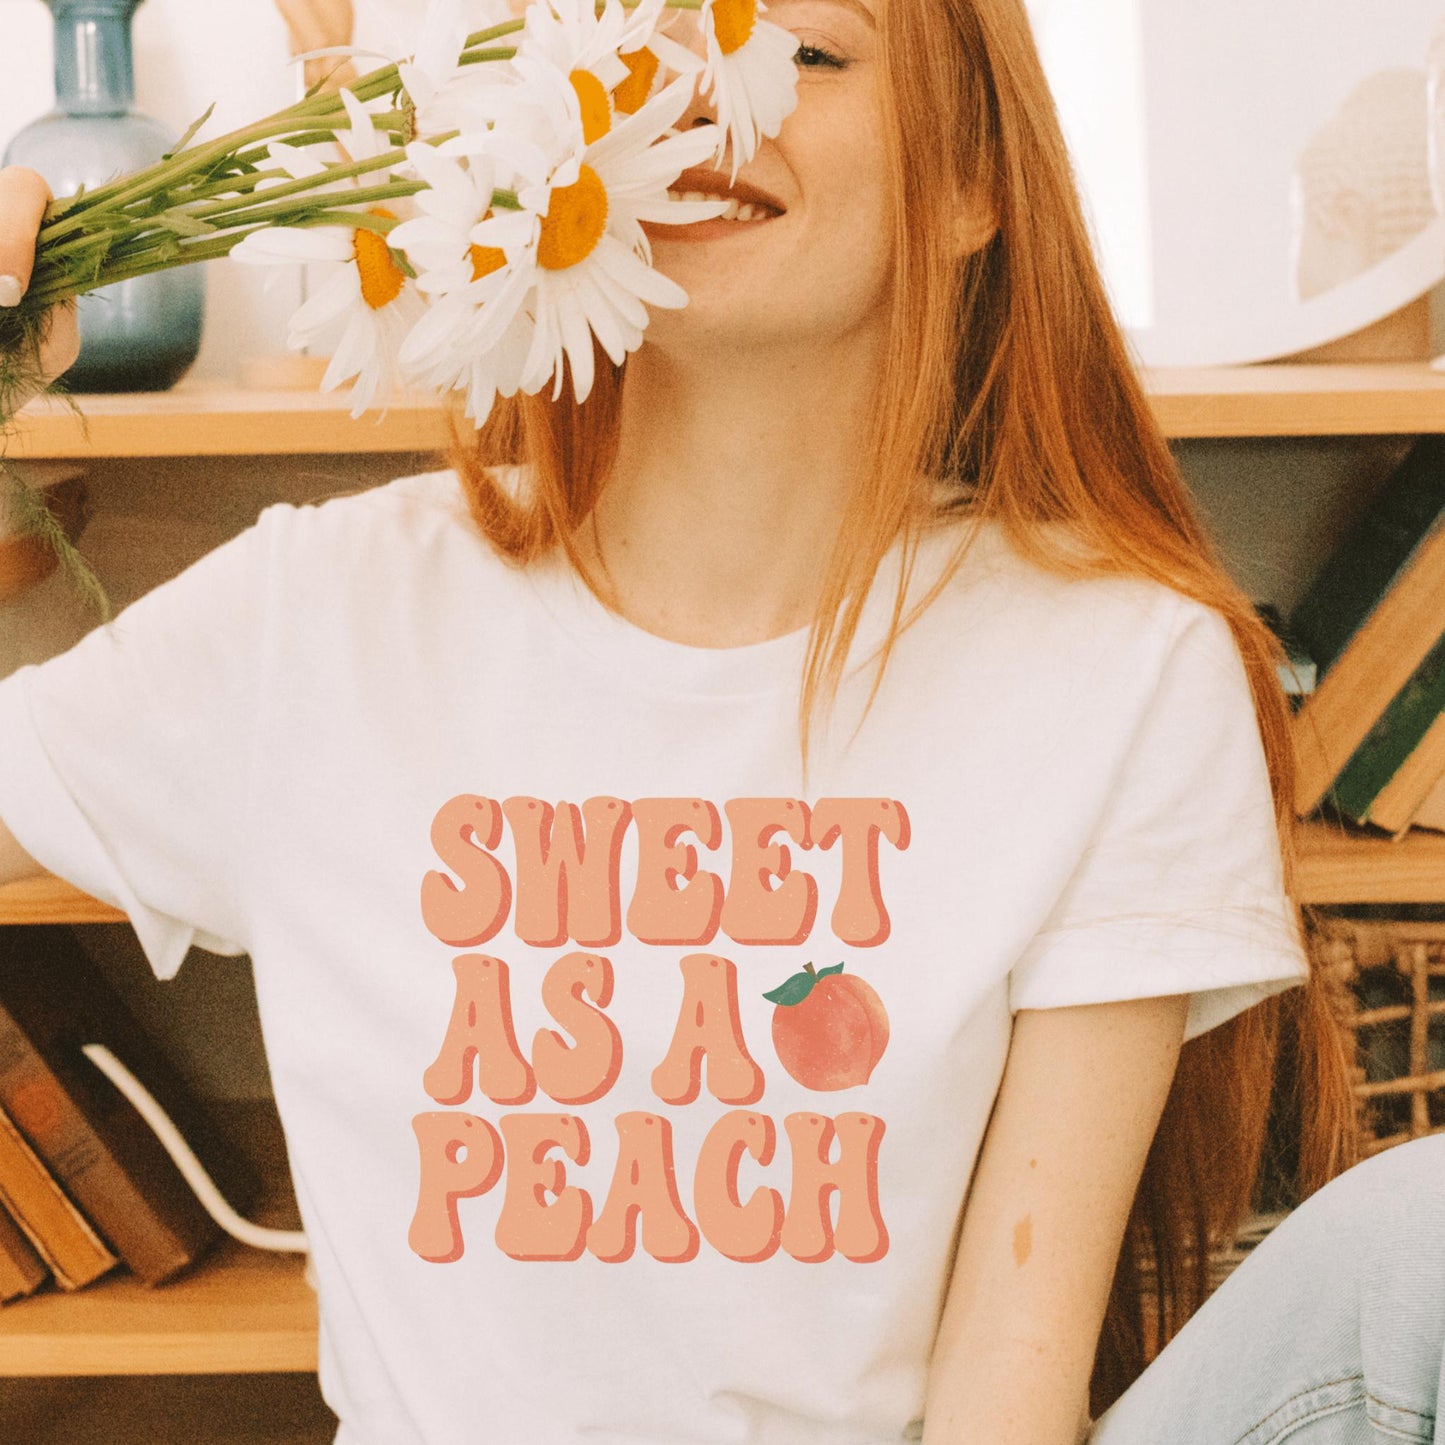 Sweet As A Peach